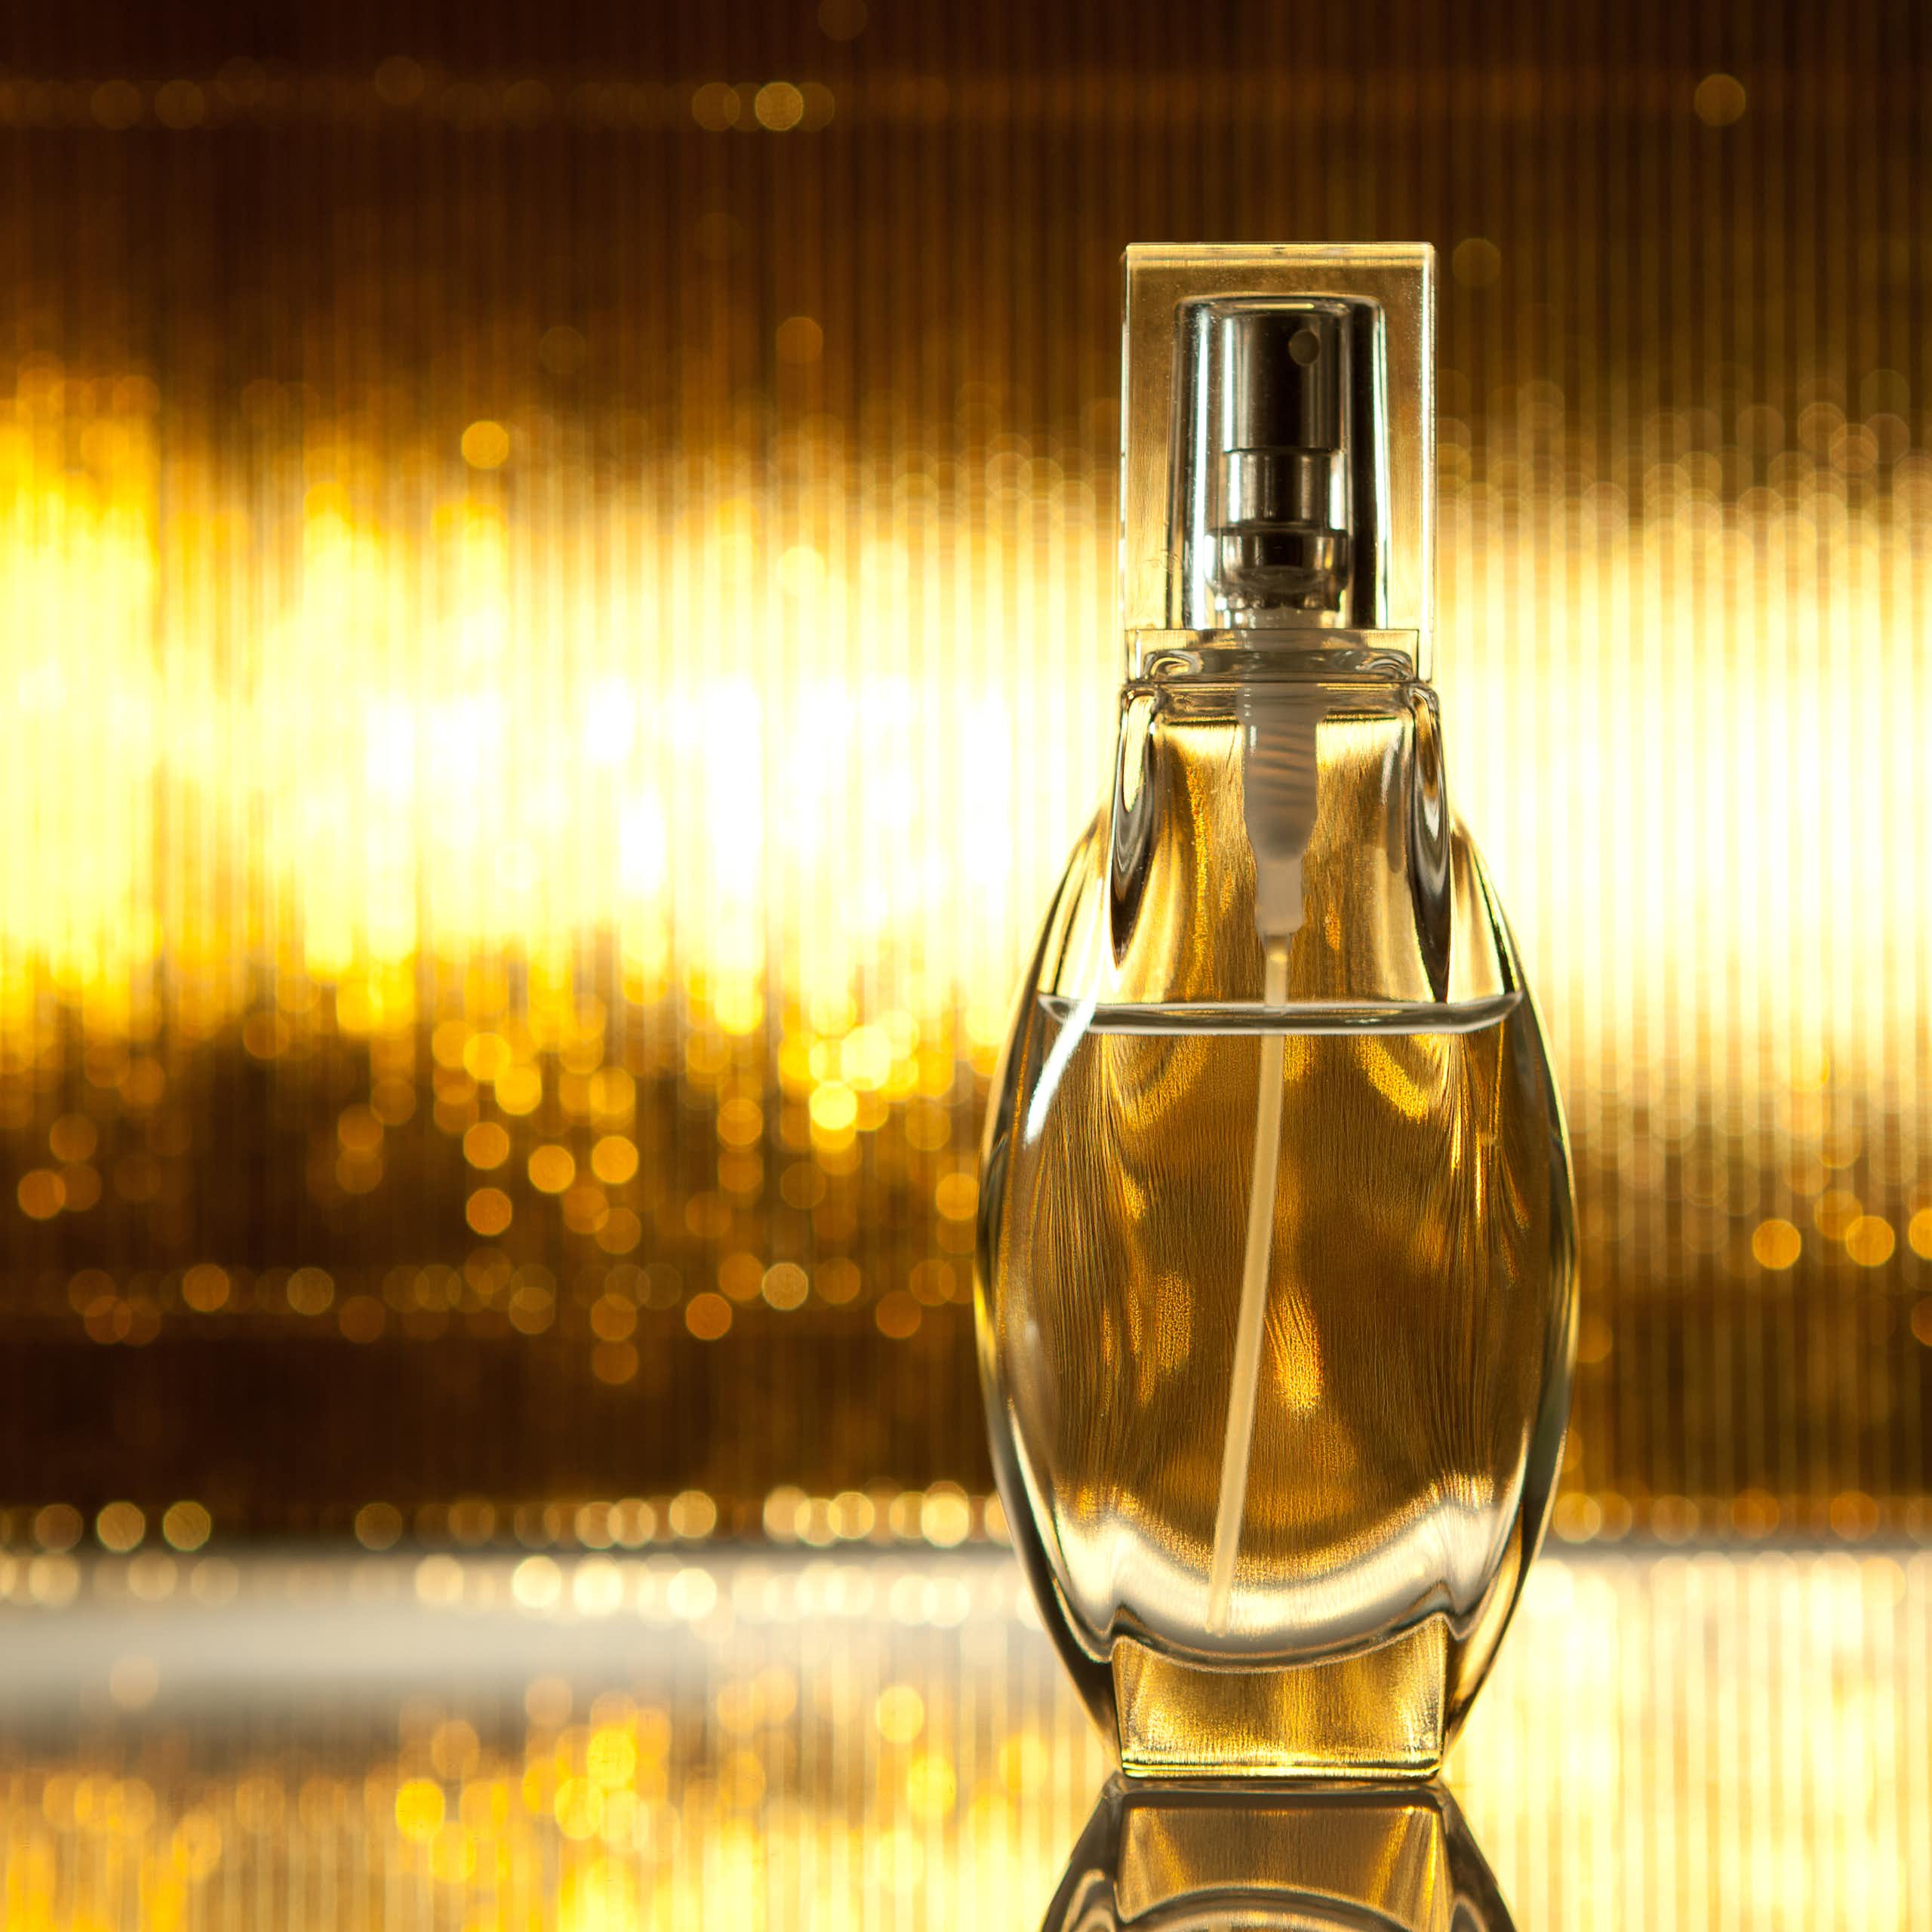 De Lilith a Afrodita: la cosificación femenina en la publicidad de perfumes